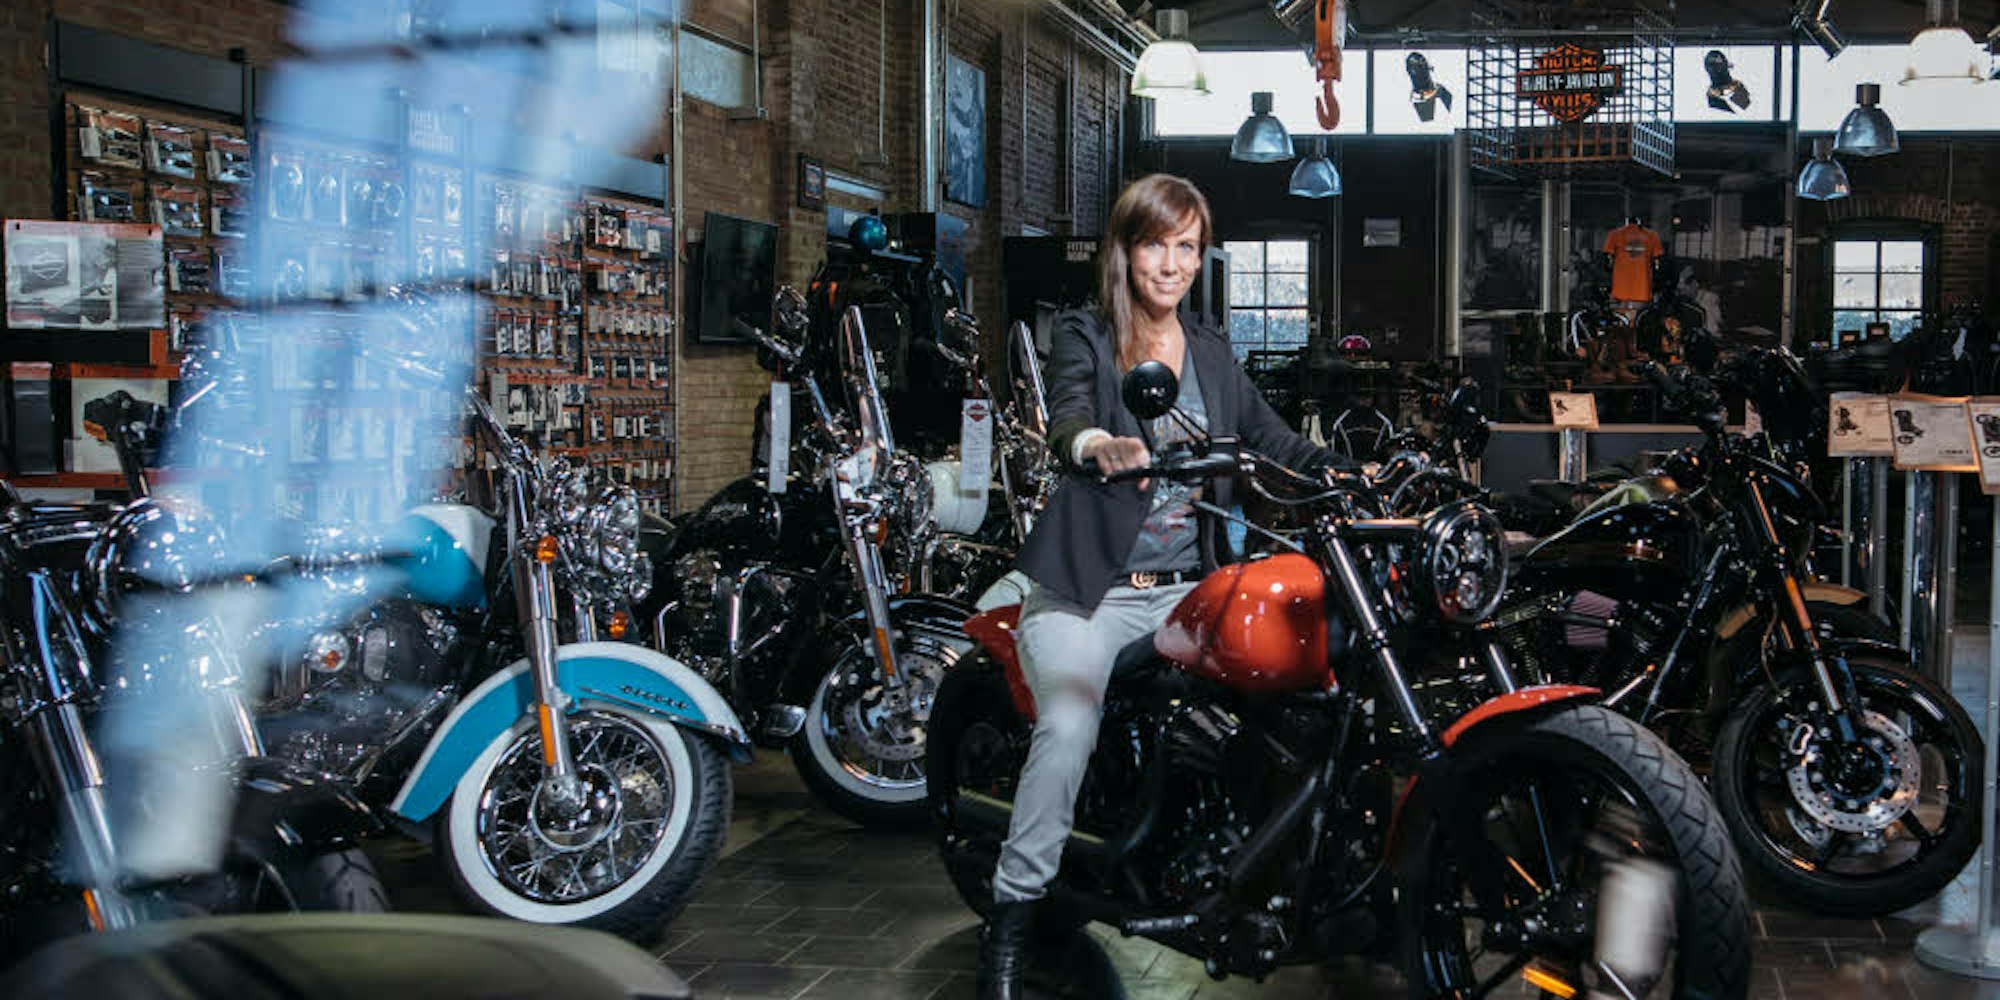 Schwere Maschinen sind die Leidenschaft von Daniela Denz, die jetzt die Harley Davidson Niederlassung in Mülheim leitet.